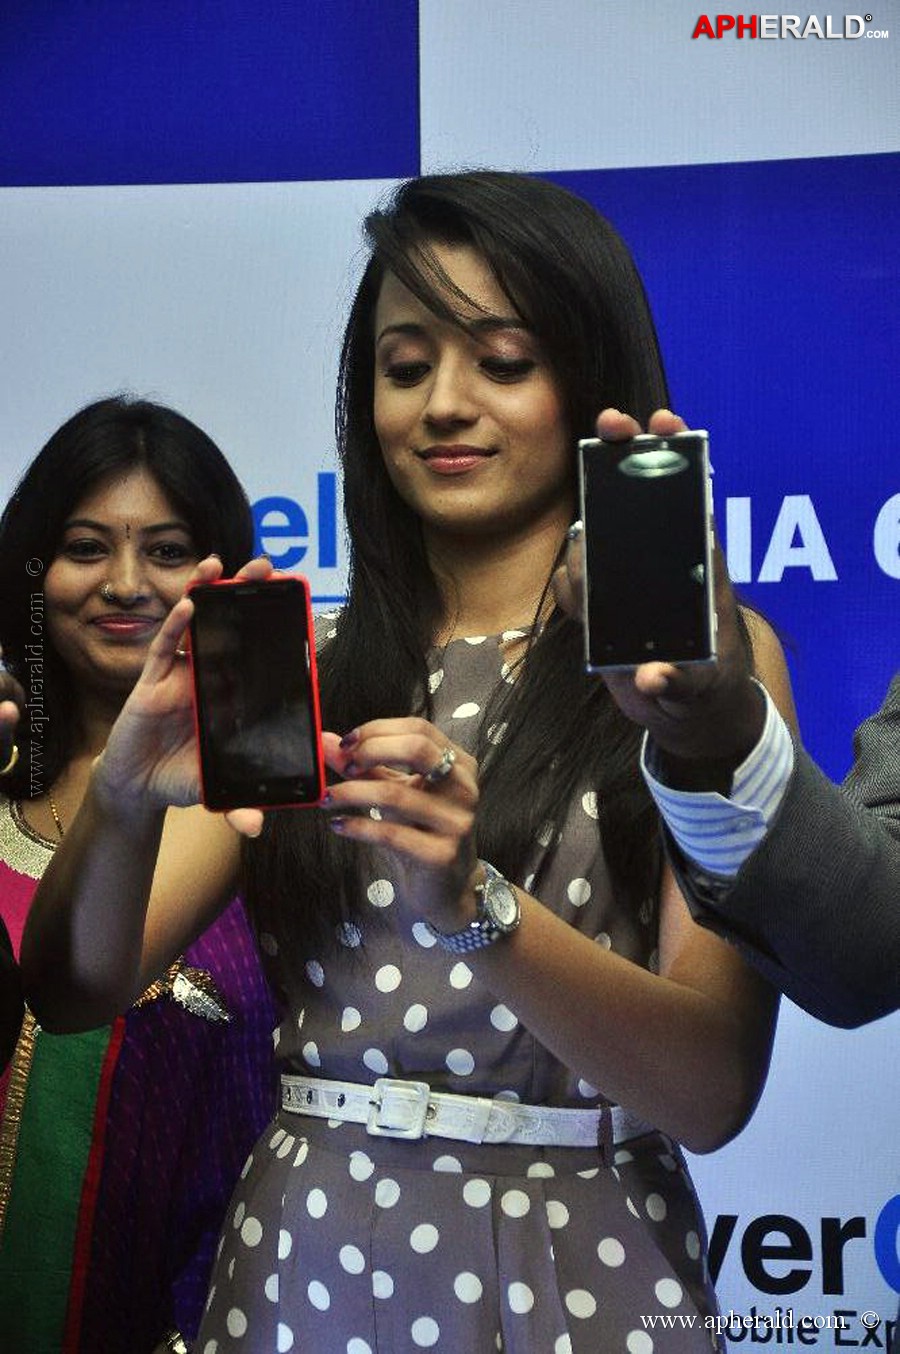 Trisha Launches Nokia Lumia